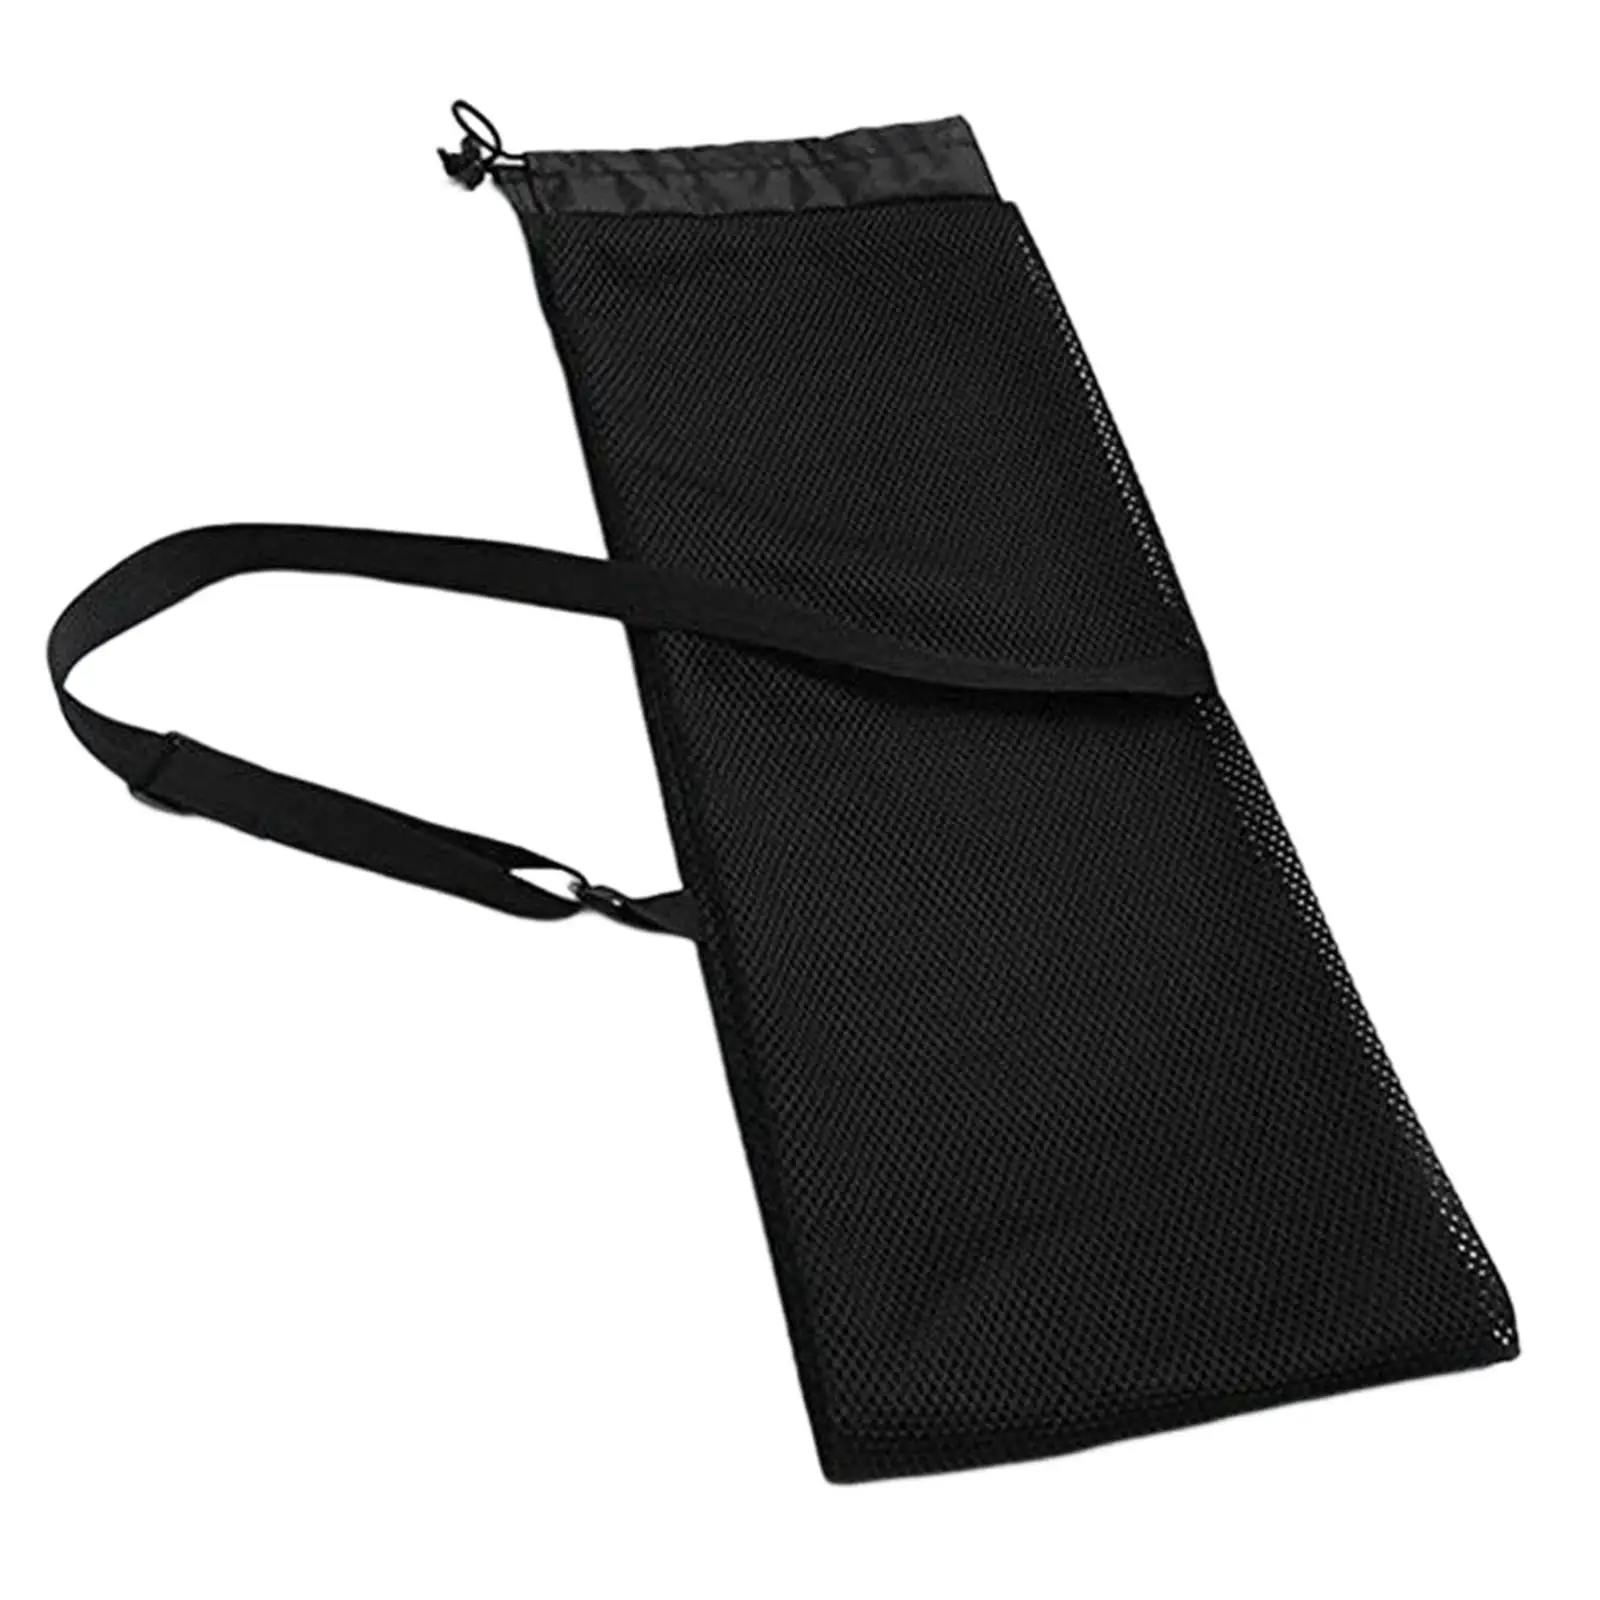 Portable  Bag Adjustable Strap Boat Paddle Split Shaft Pouch Carrying Bag Holder Drawstring Mesh Cover Case